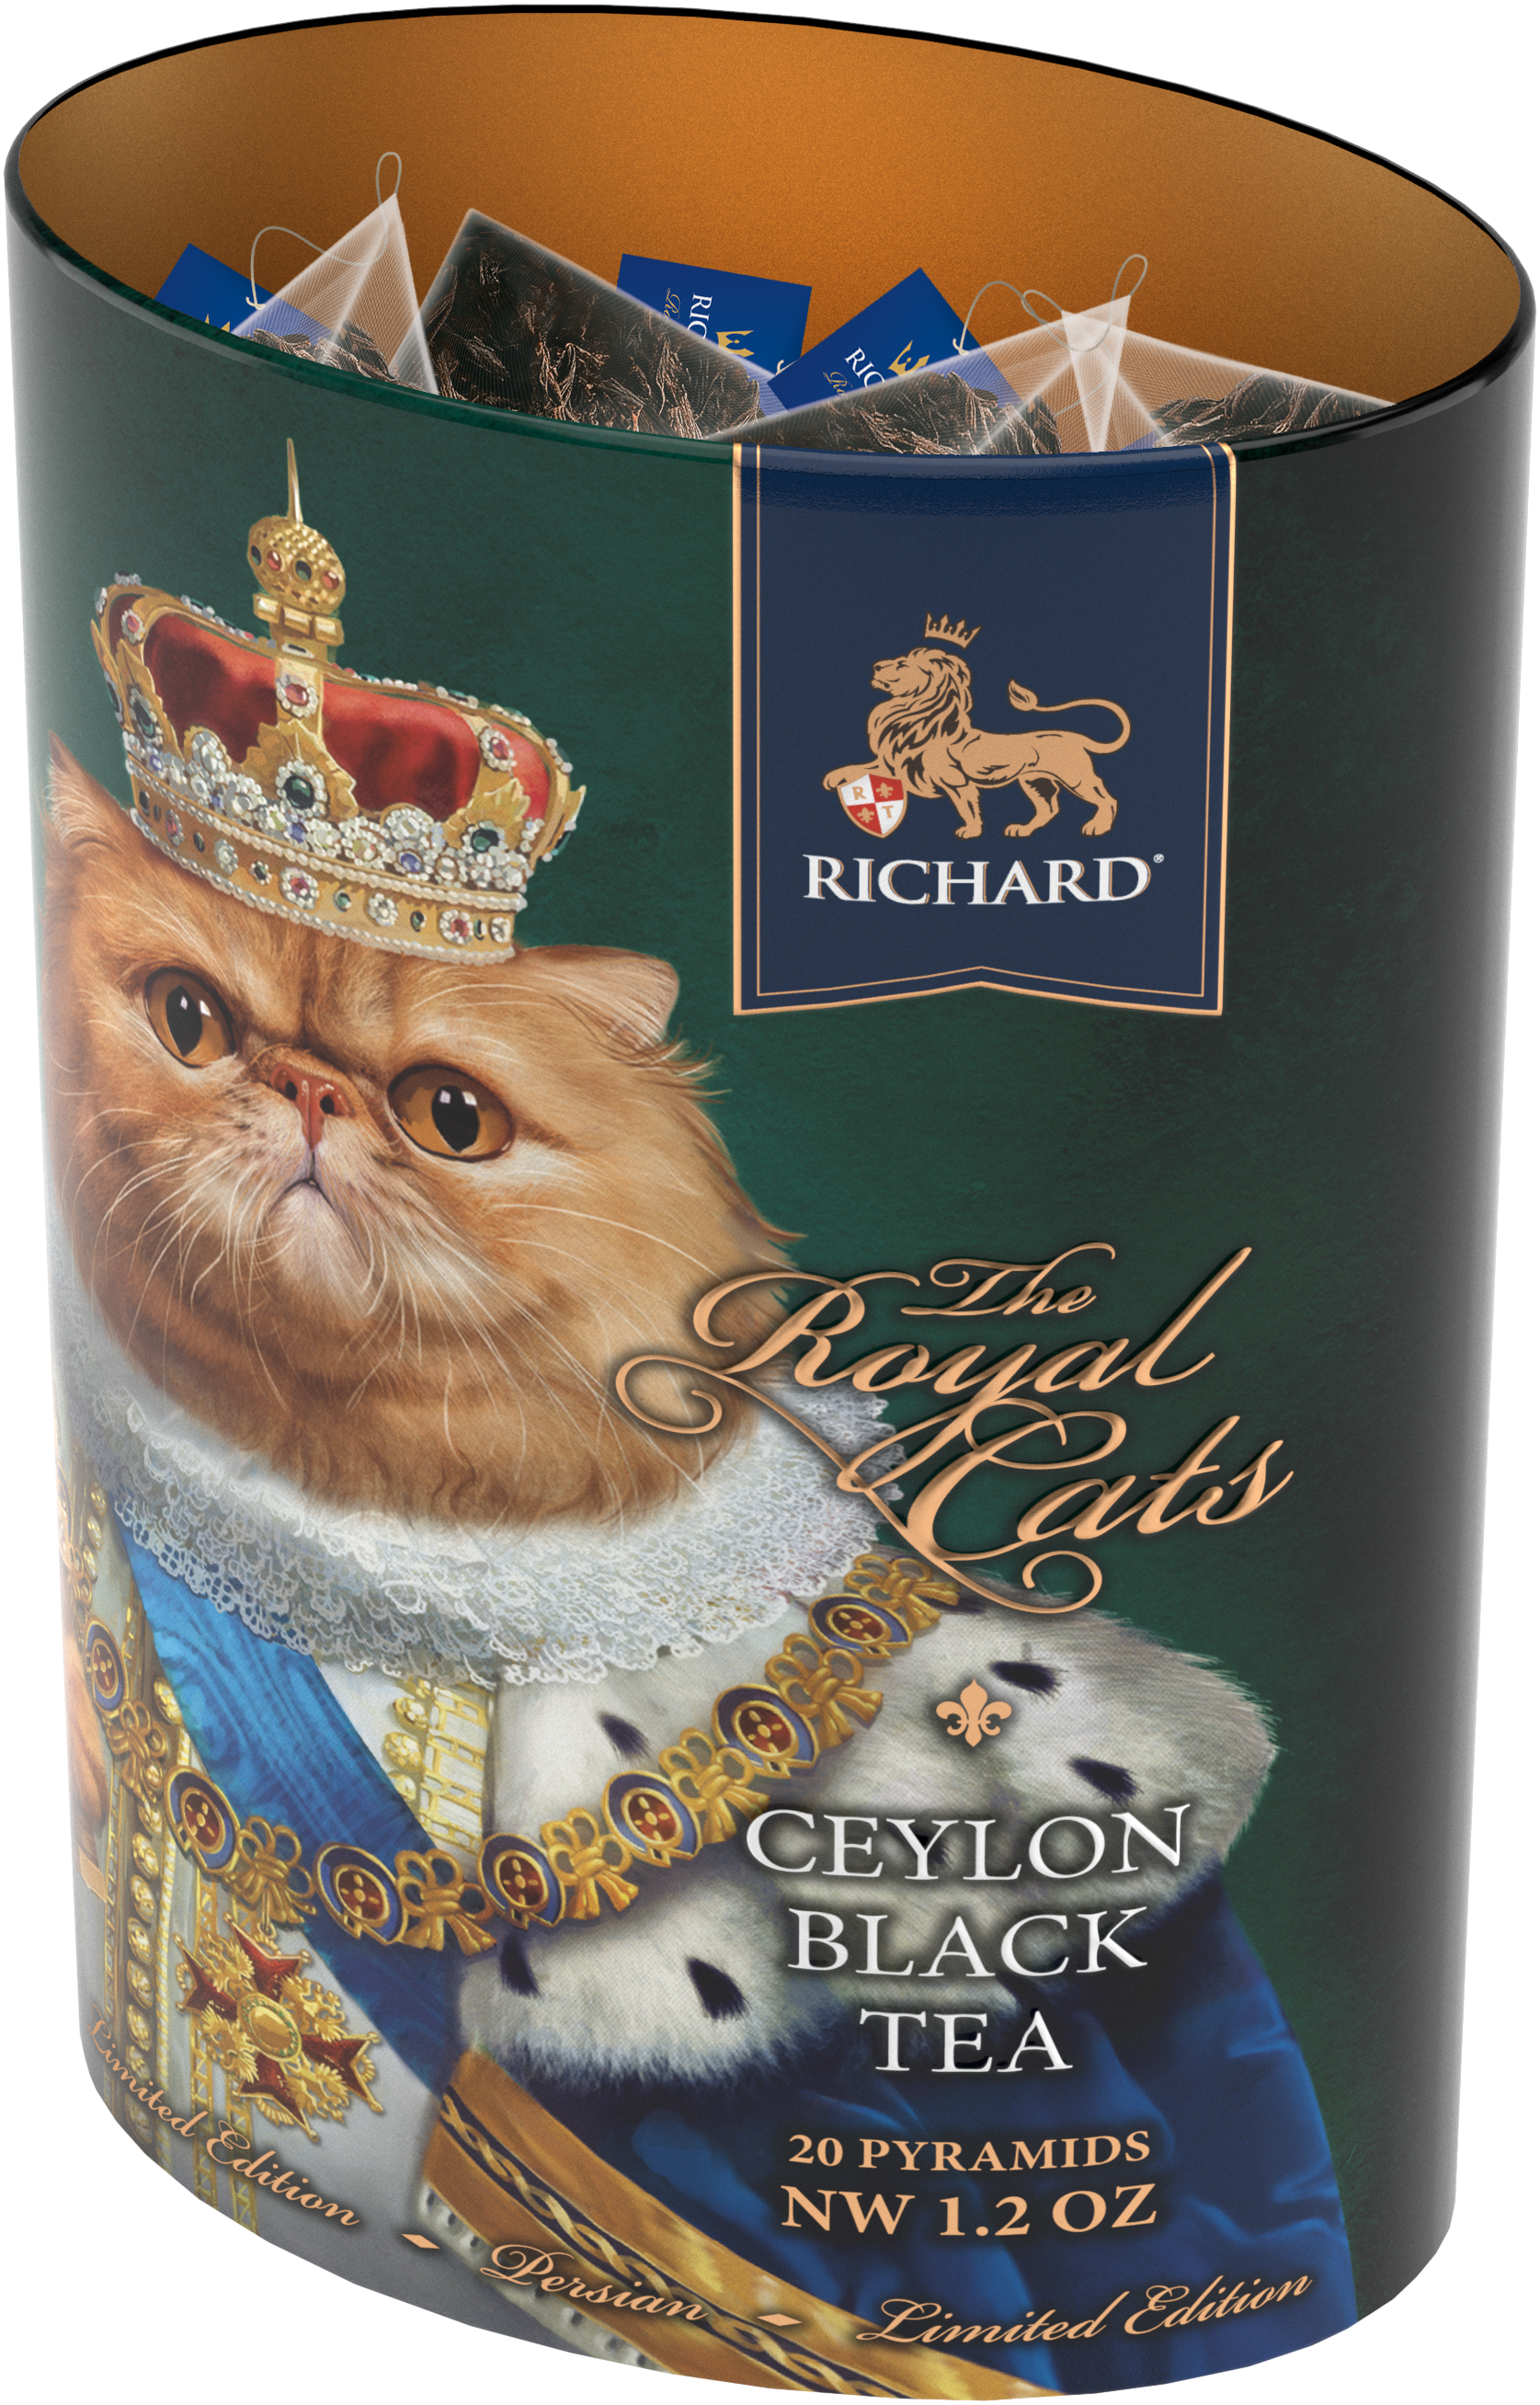 Richard Royal Macska, fekete tea, 34g, piramis-filterben, fémdoboz, Perzsa Vörös macska - RichardTeavn - vásároljon a 2990.00 Ft